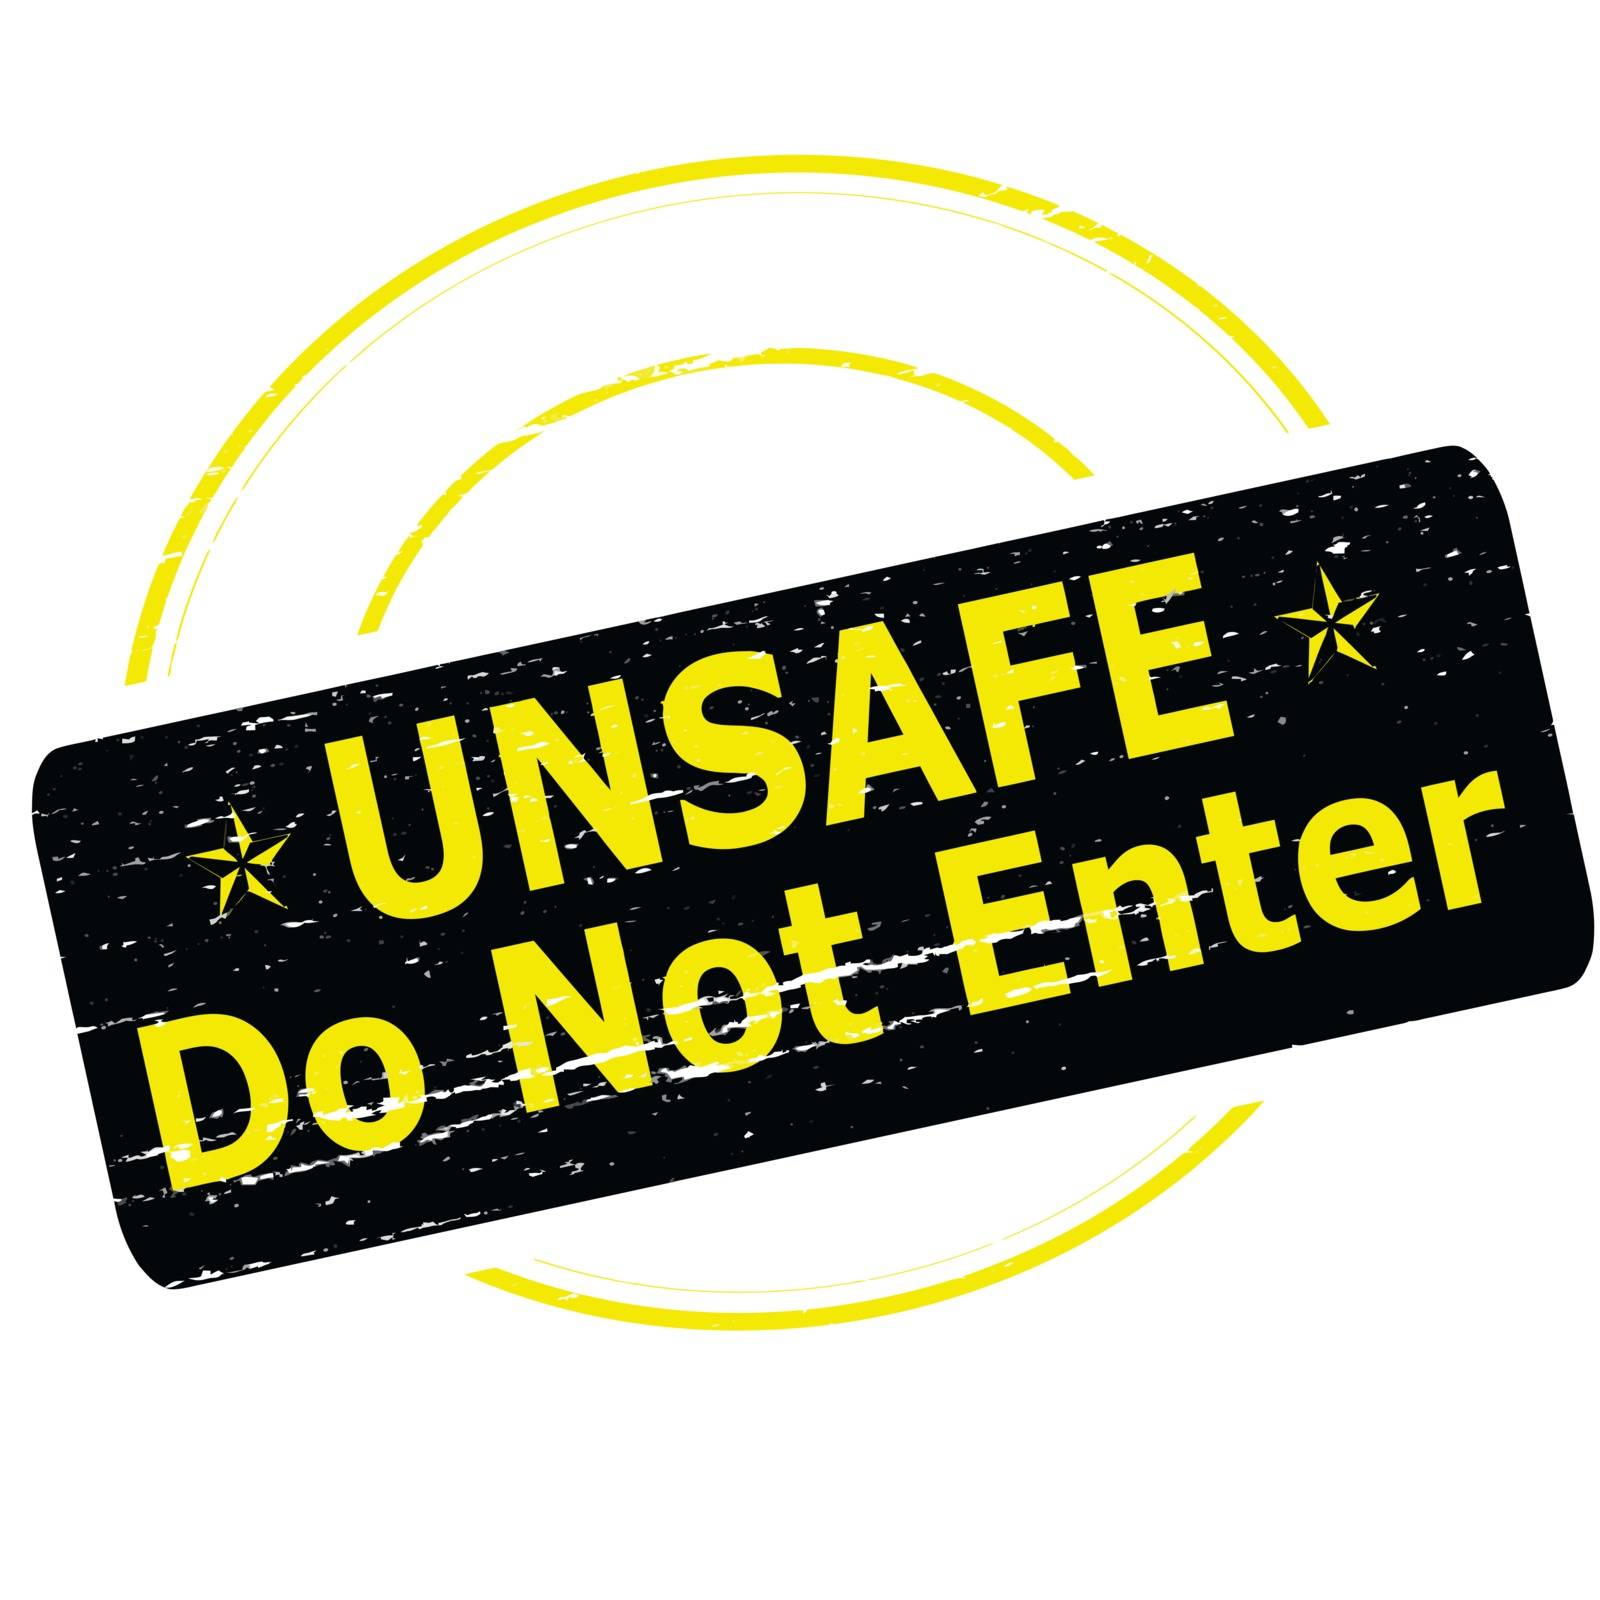 Unsafe do not enter by carmenbobo